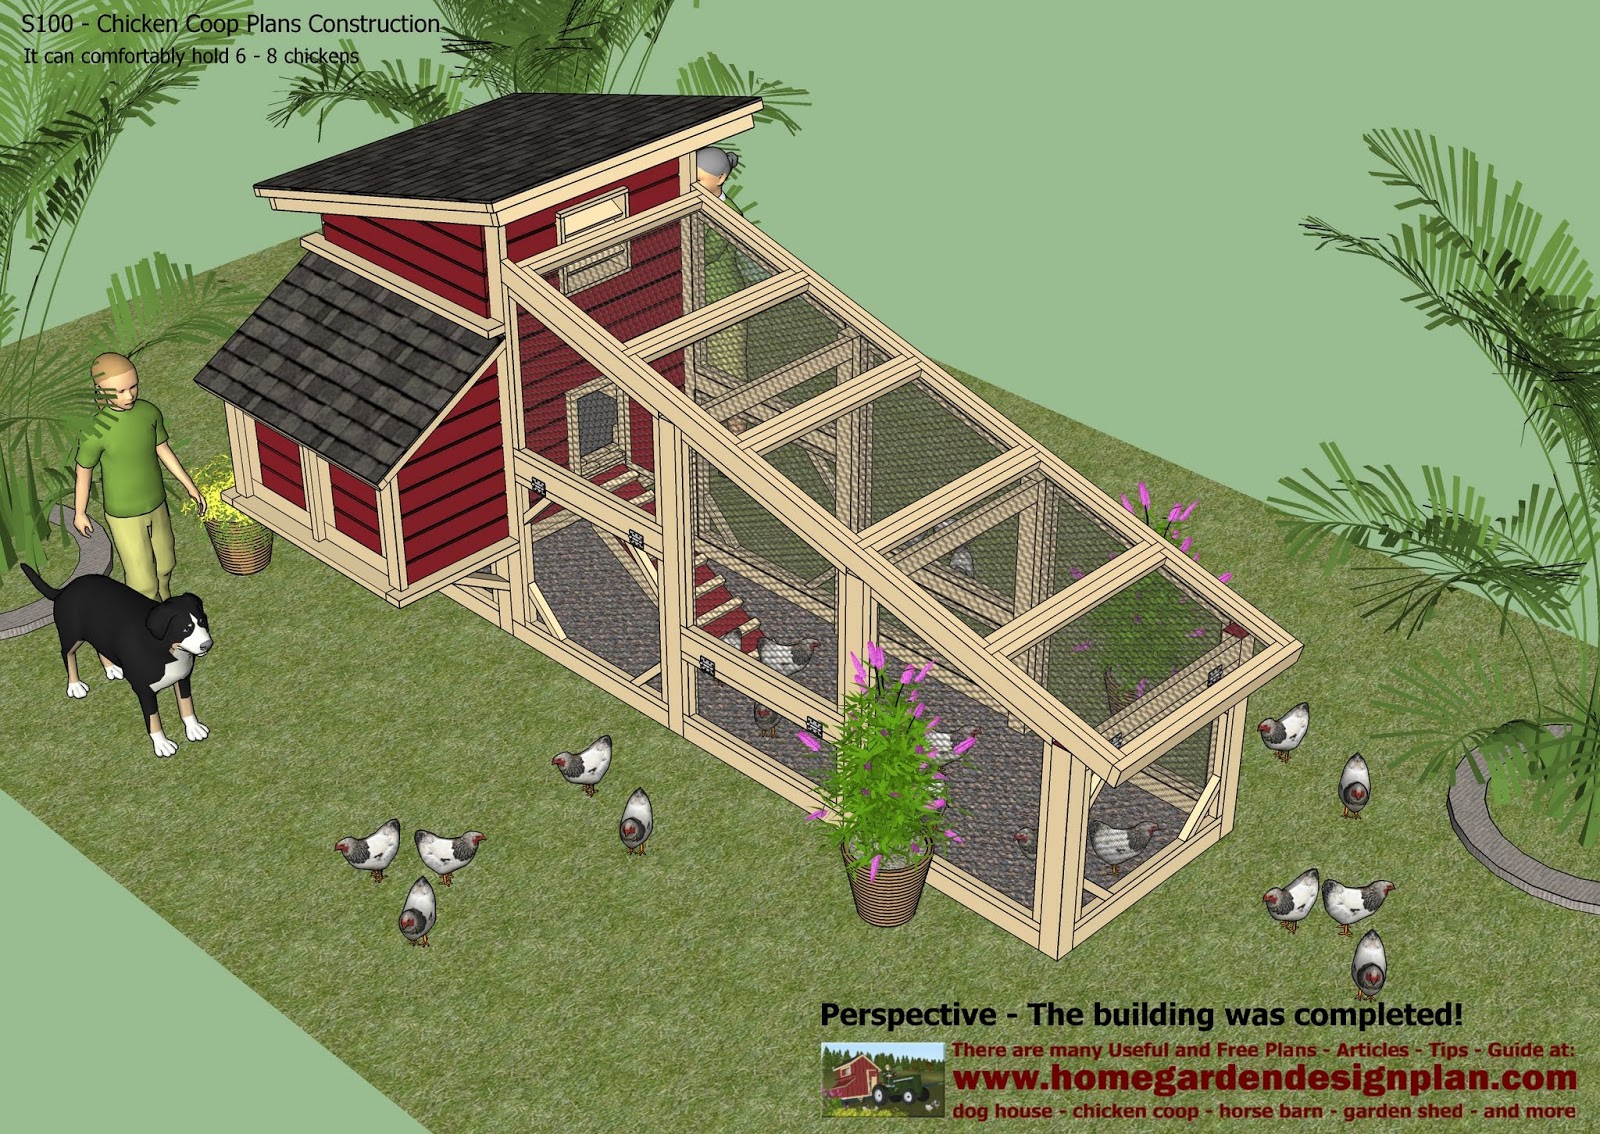 ... garden plans: S100 - Chicken Coop Plans Construction - Chicken C